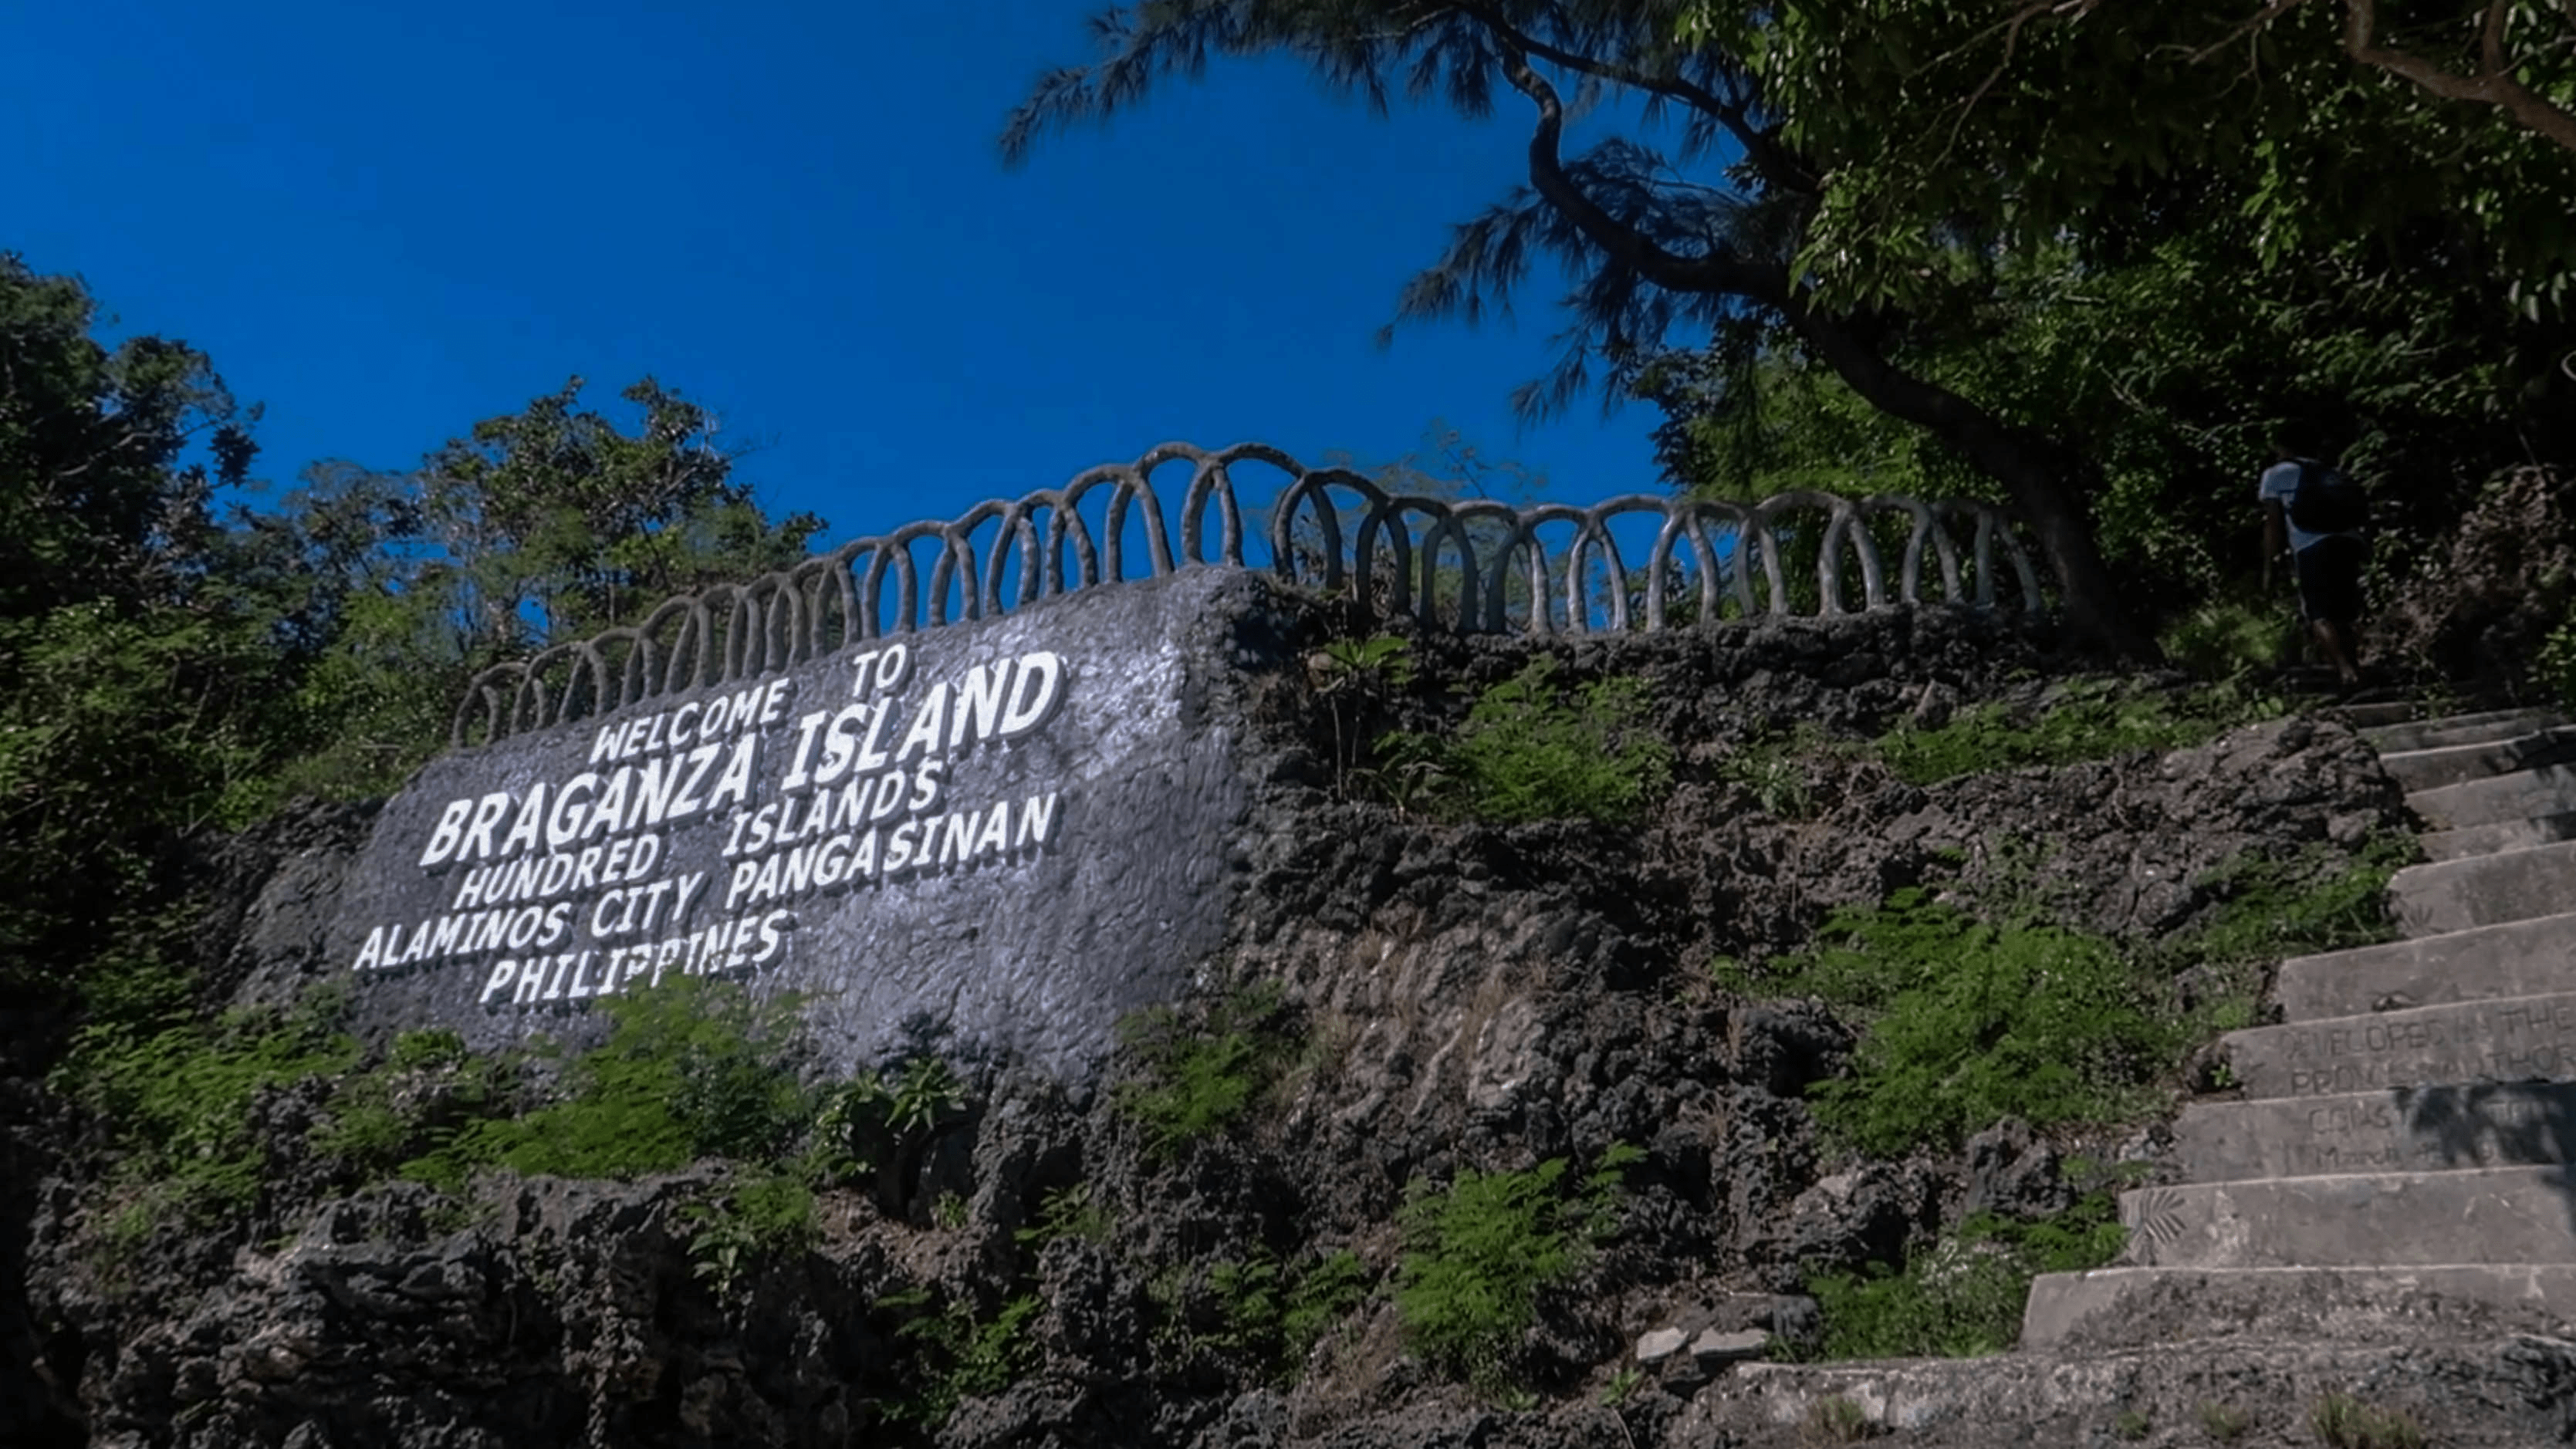 sign at braganza island at hundred islands pangasinan philippines